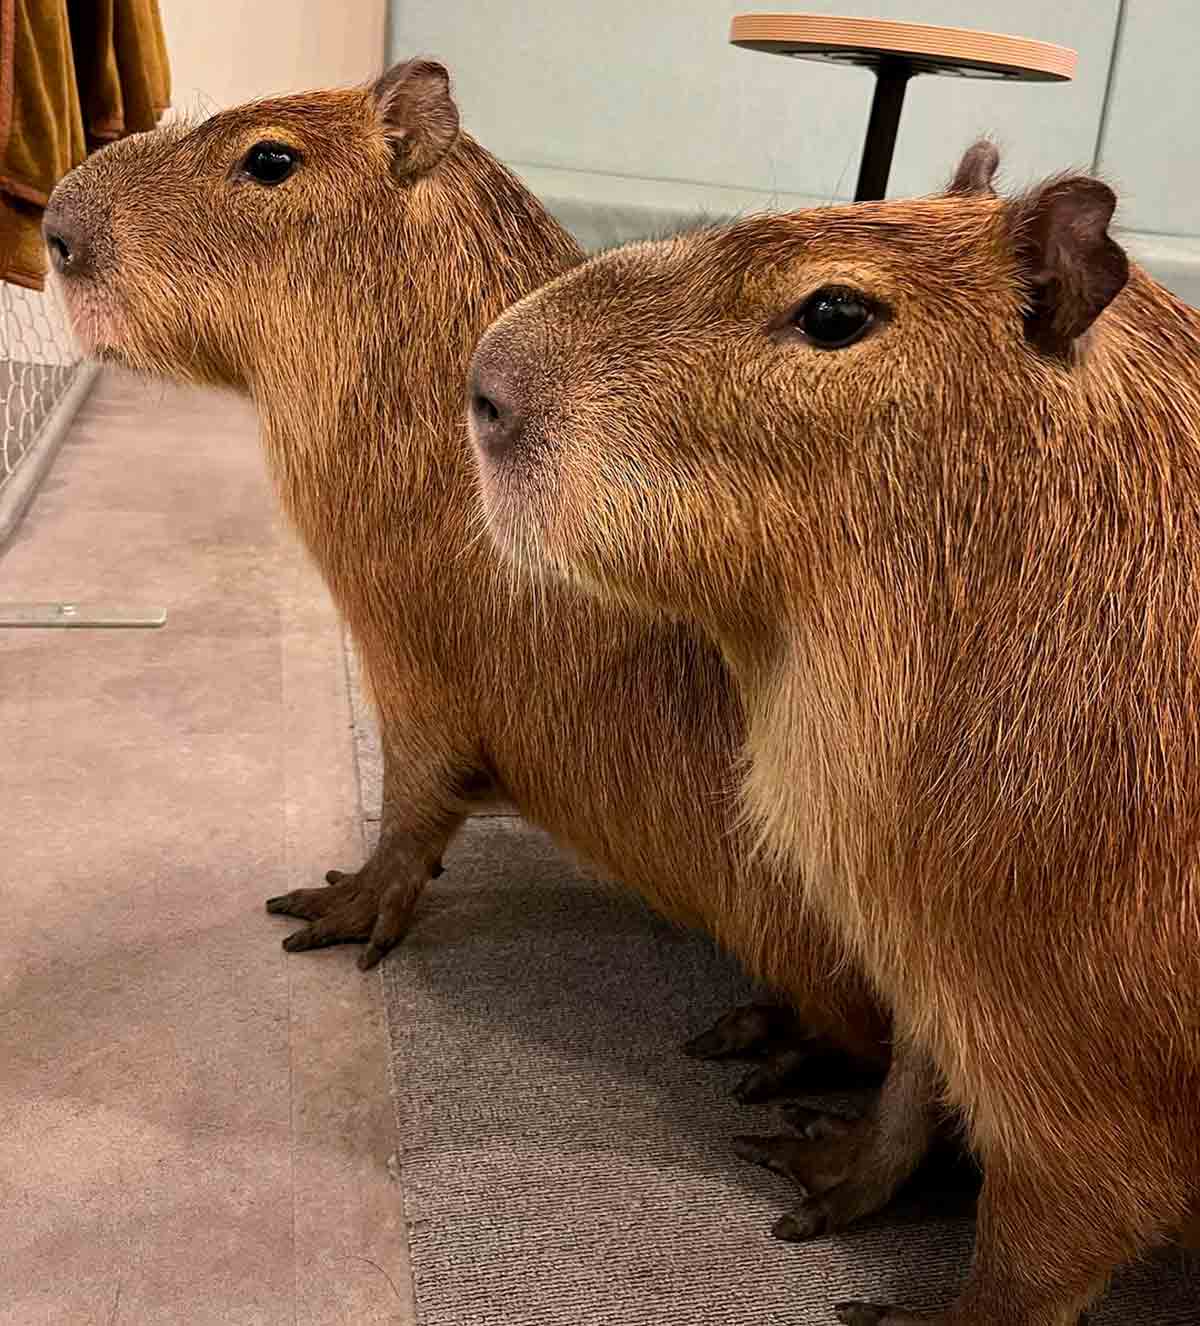 Ontdek het café in Japan waar klanten interactie hebben met 2 grote capibara's. Instagram @cafe_capyba